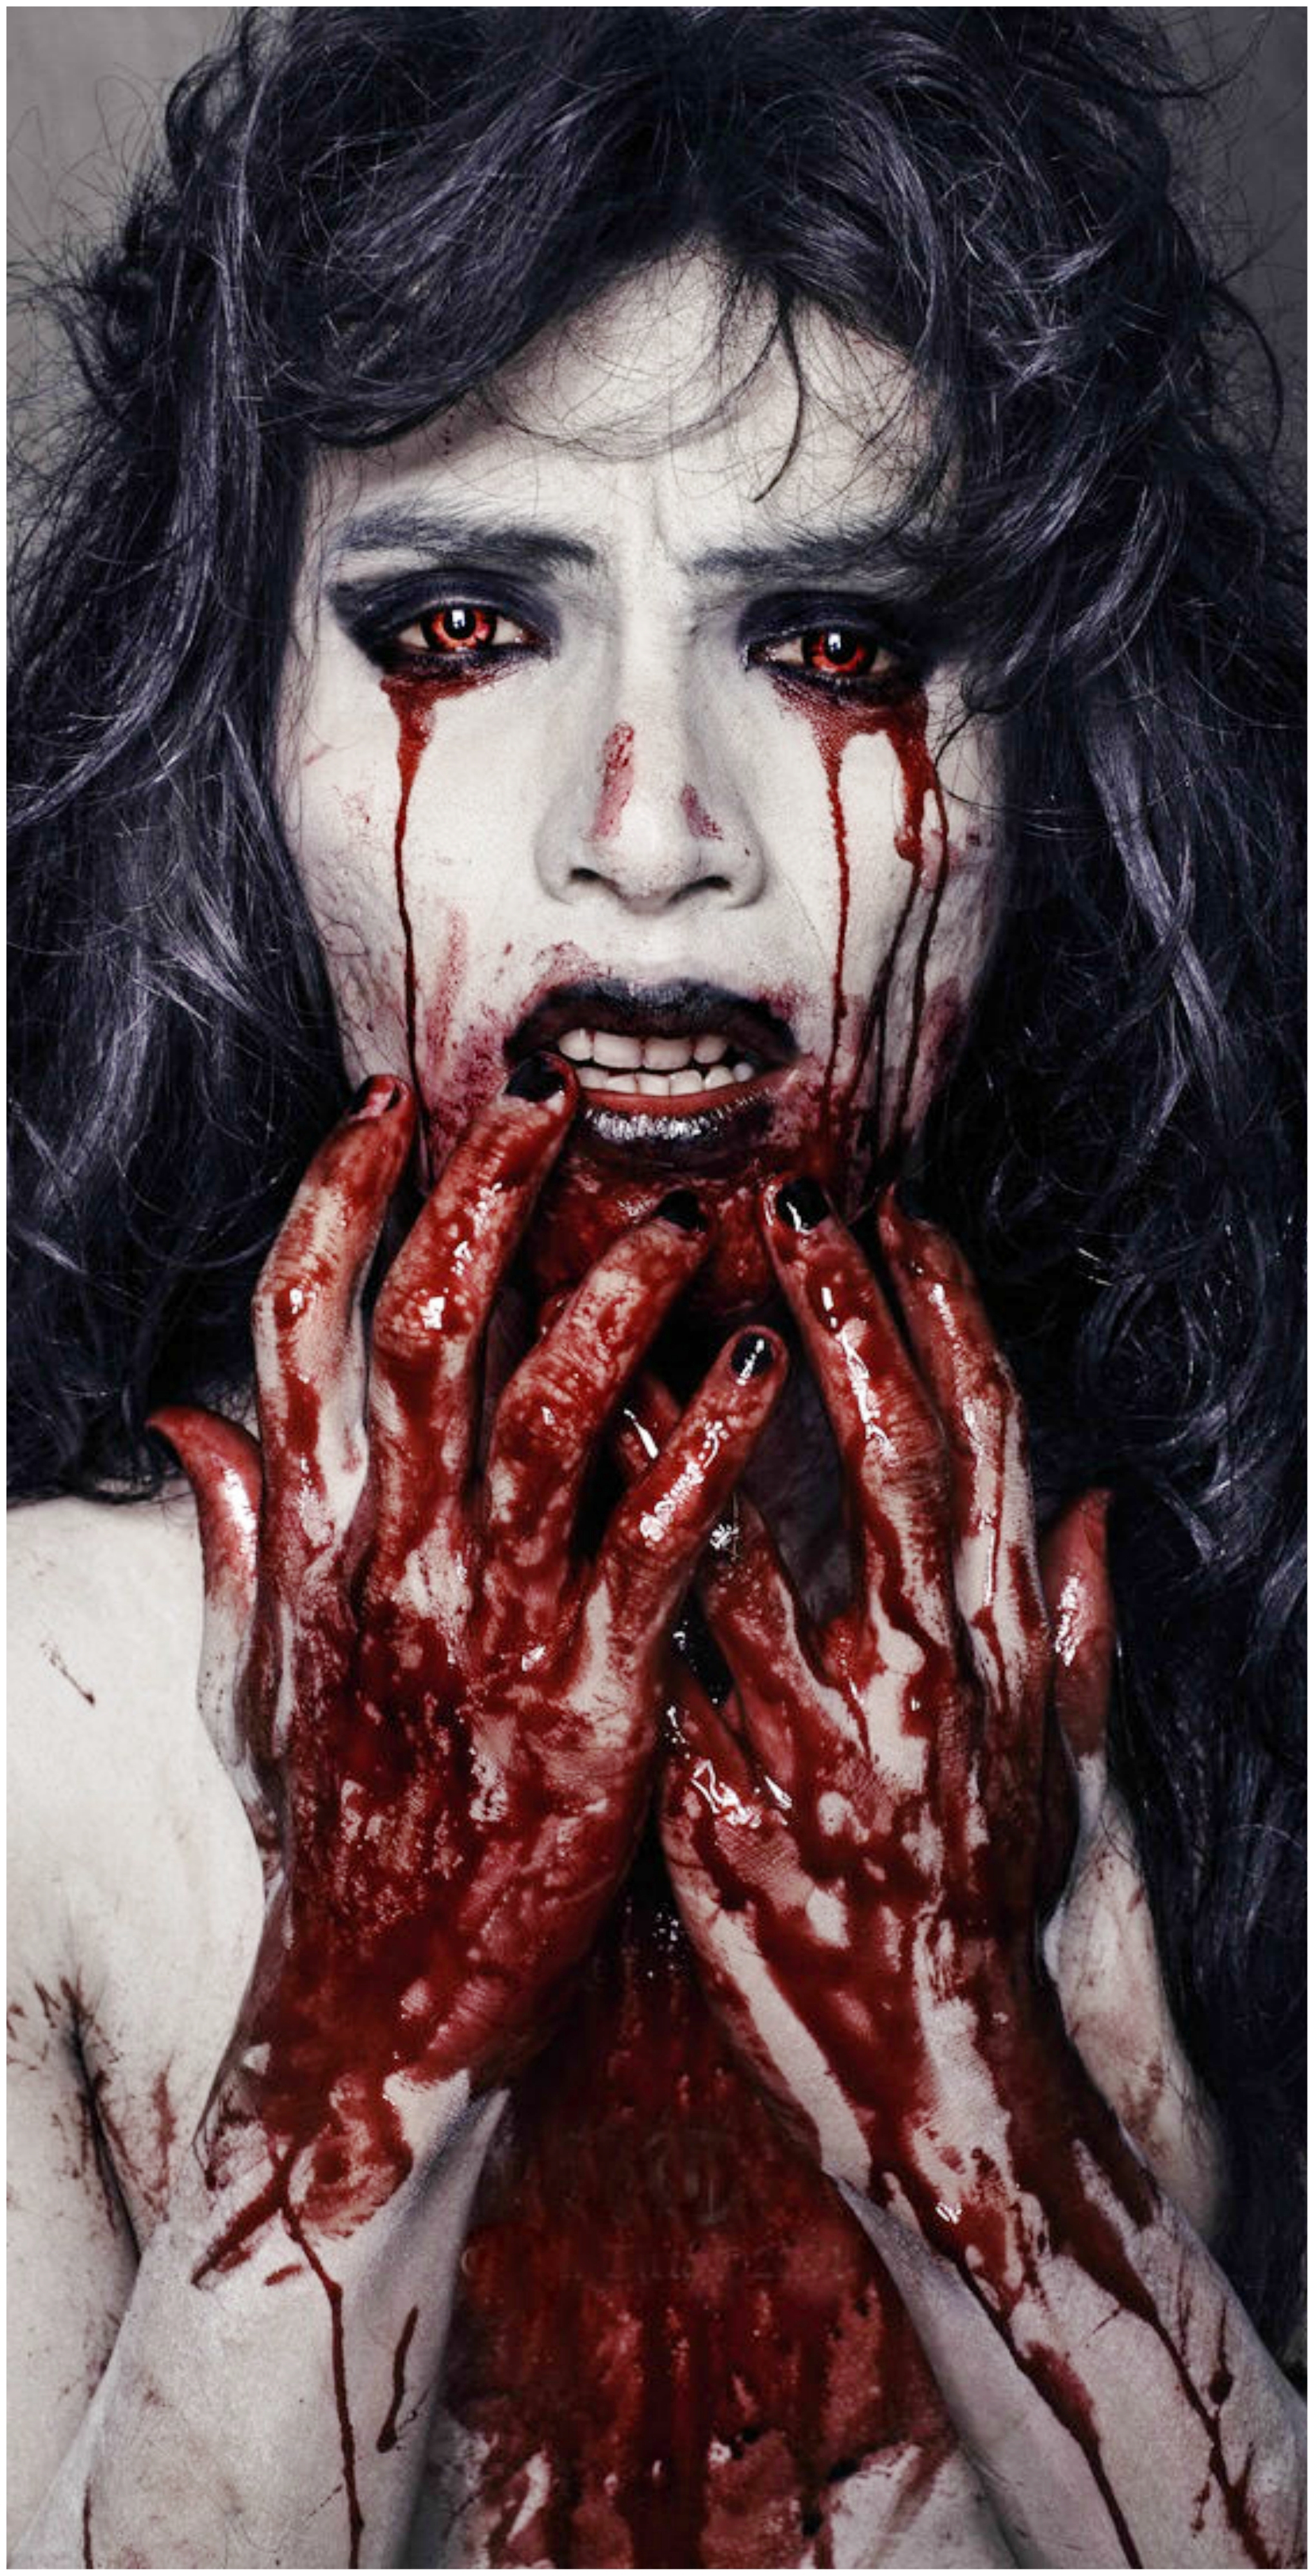 10. Halloween Blood Makeup Ideas